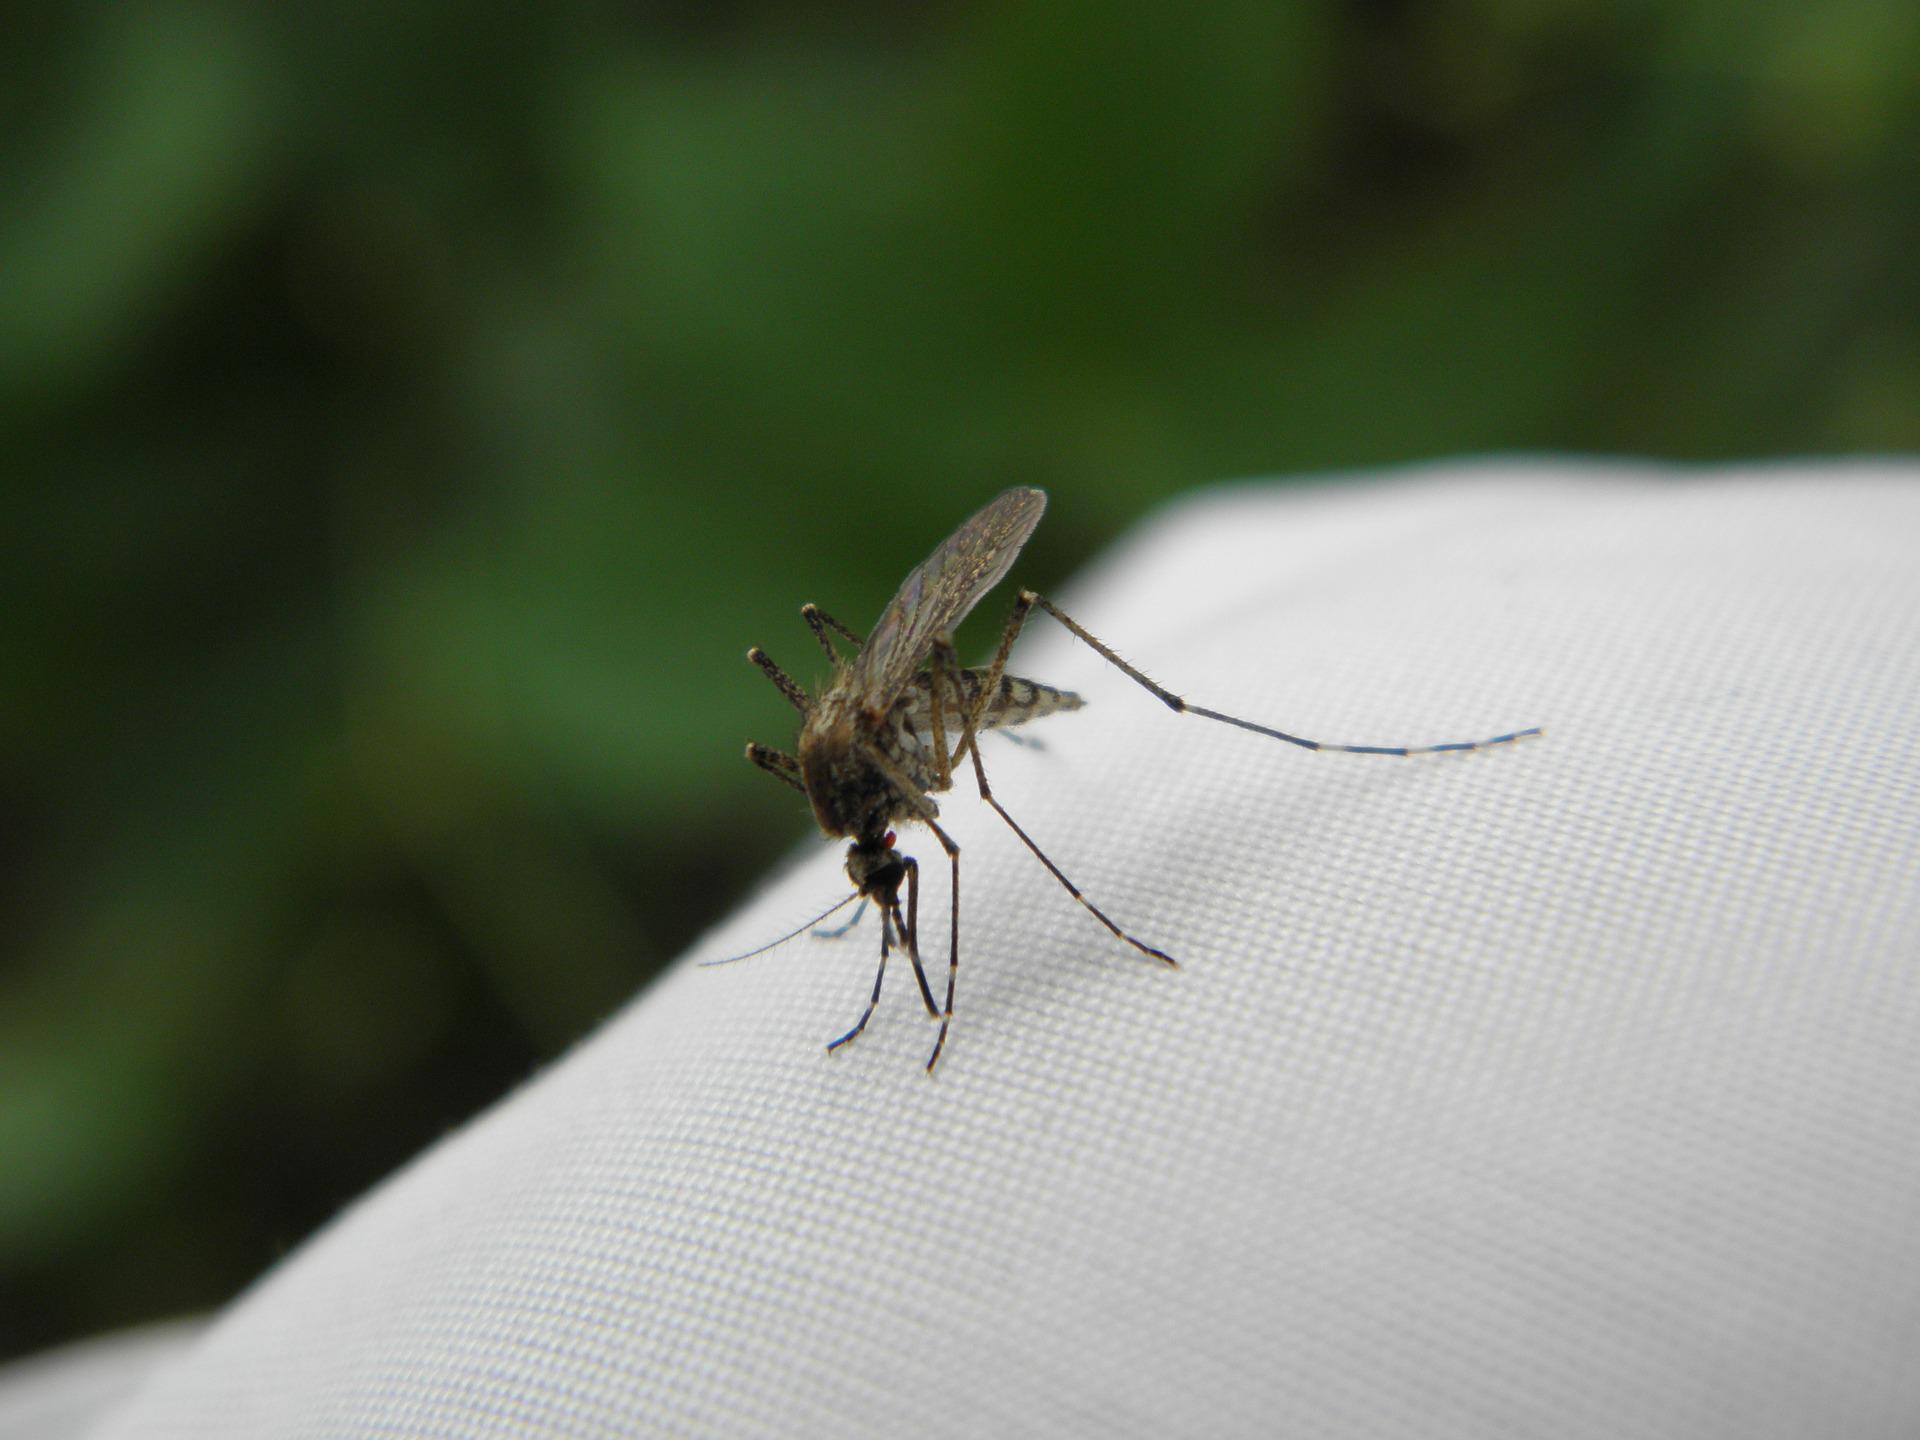 Muggen horen helaas ook bij de zomer. Alleen waarom zijn er eigenlijk zoveel muggen nu?